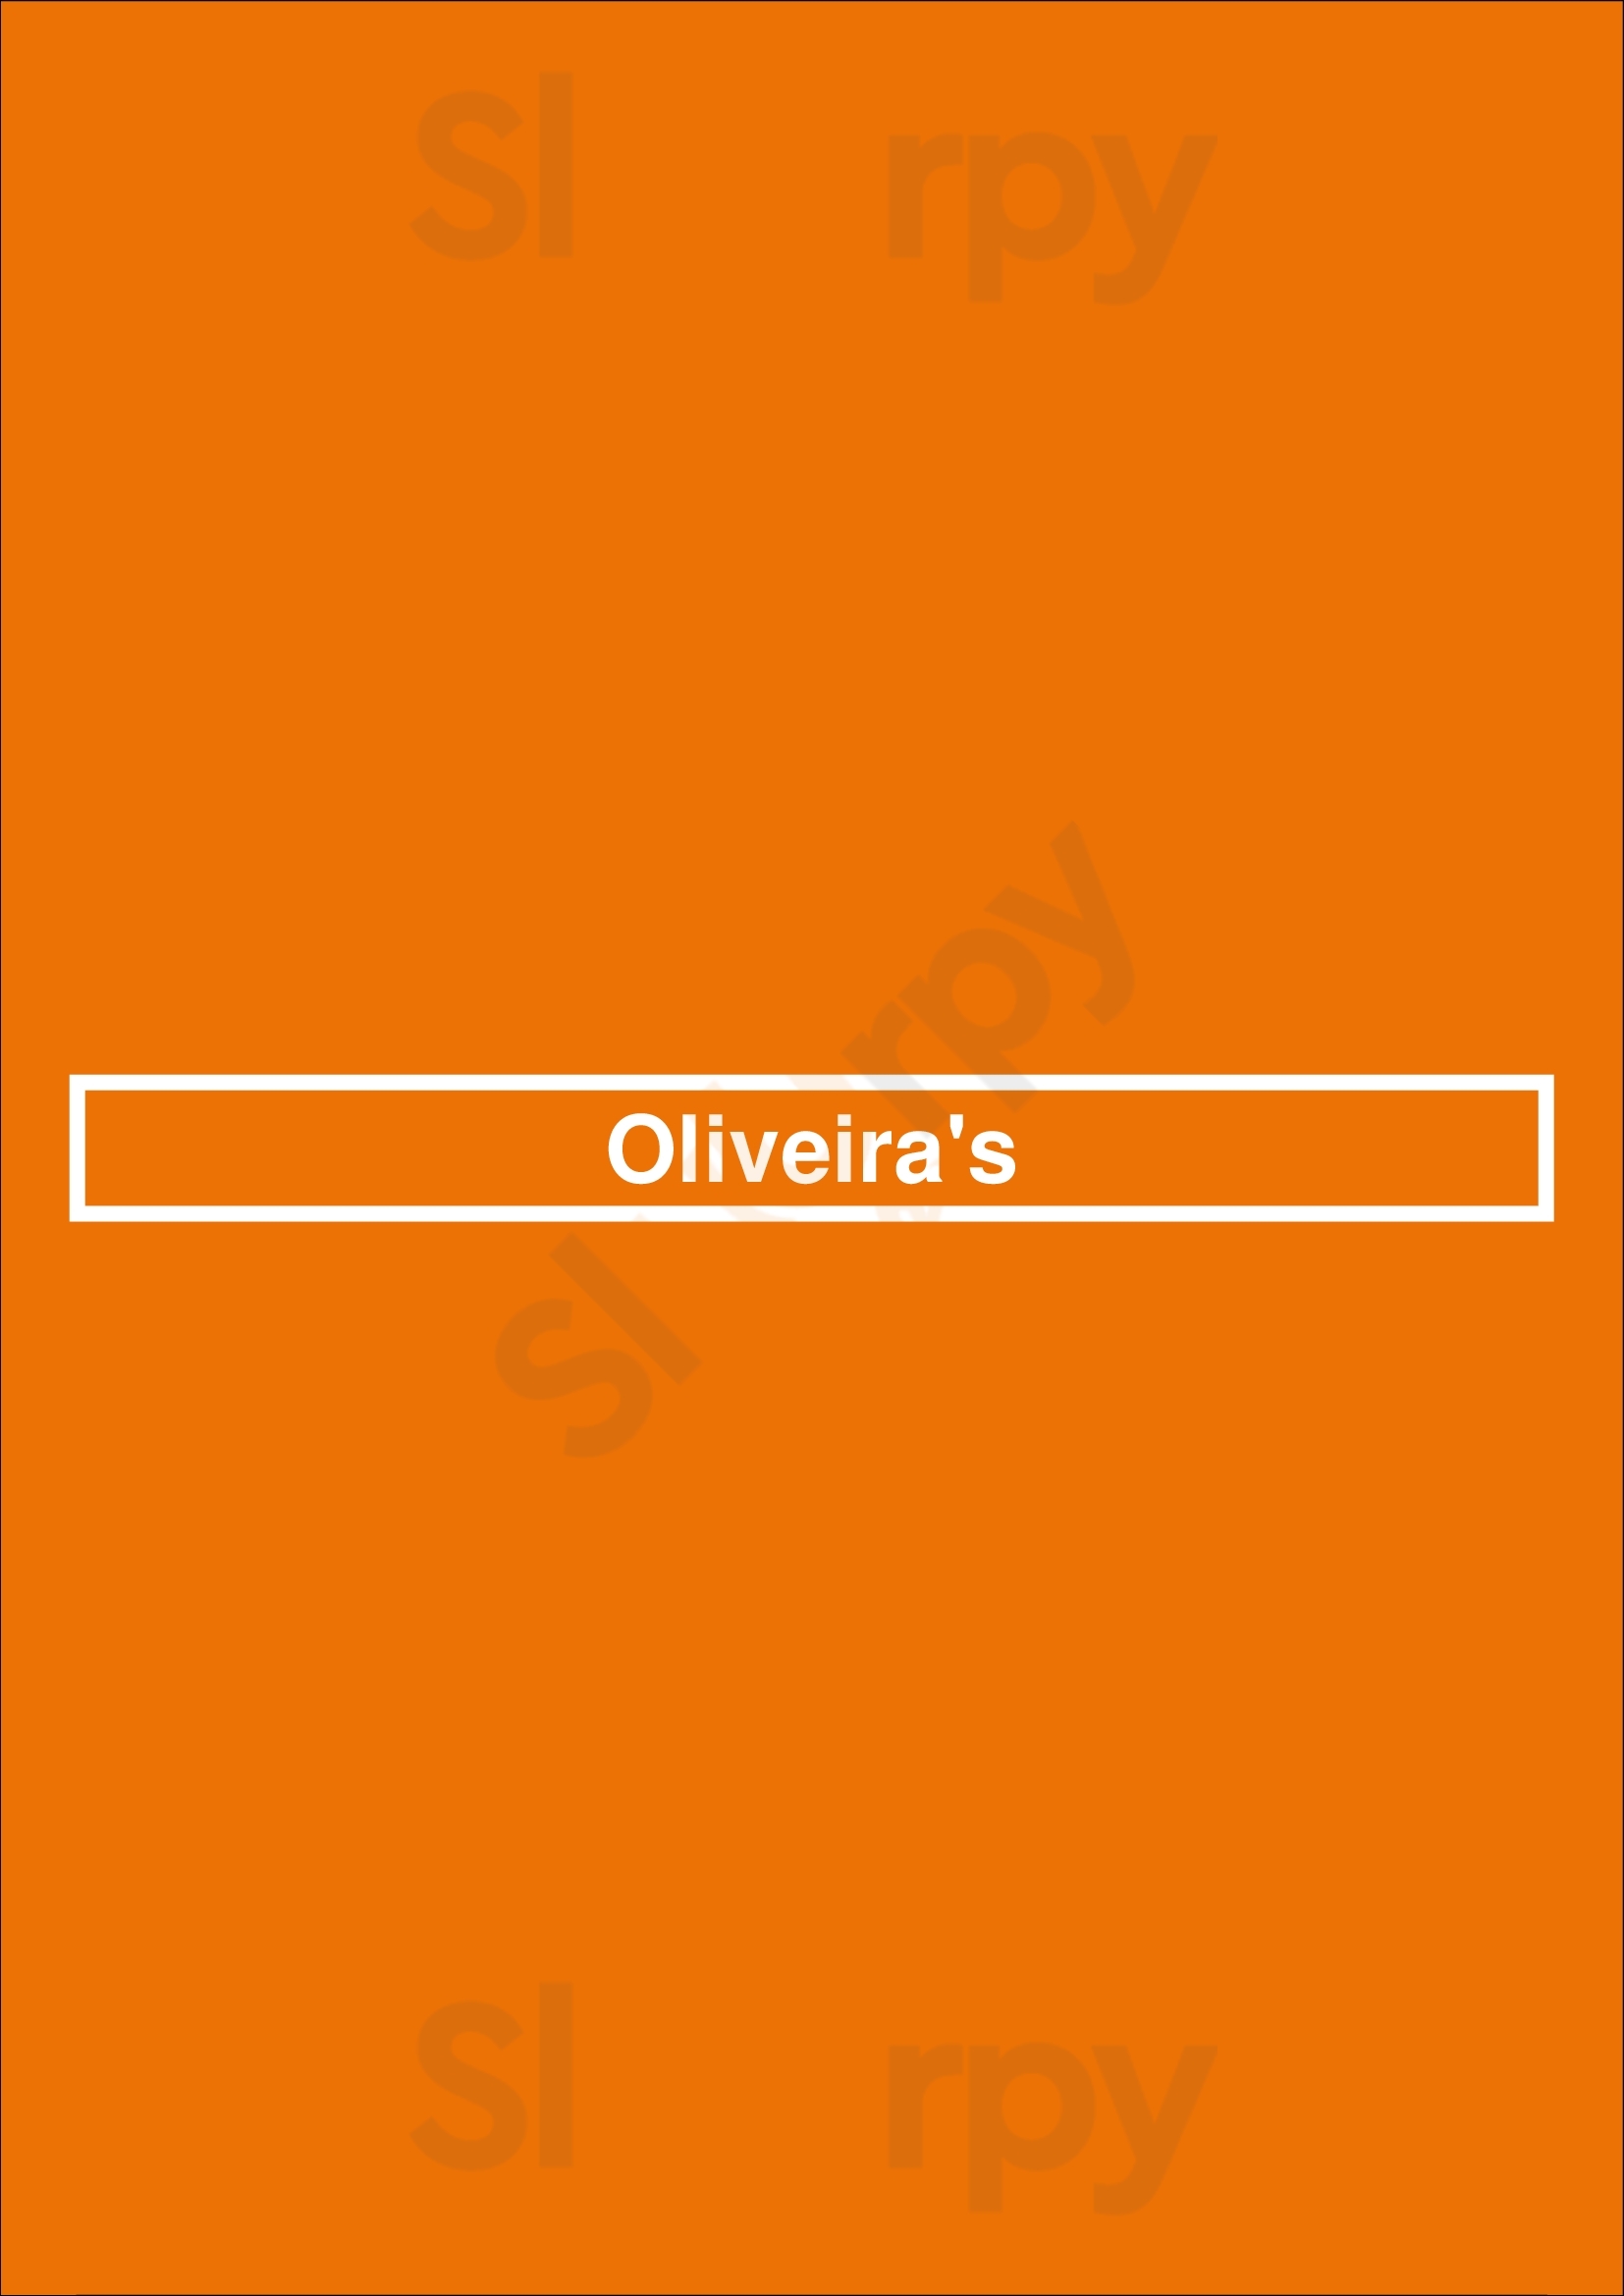 Oliveira's Lisboa Menu - 1